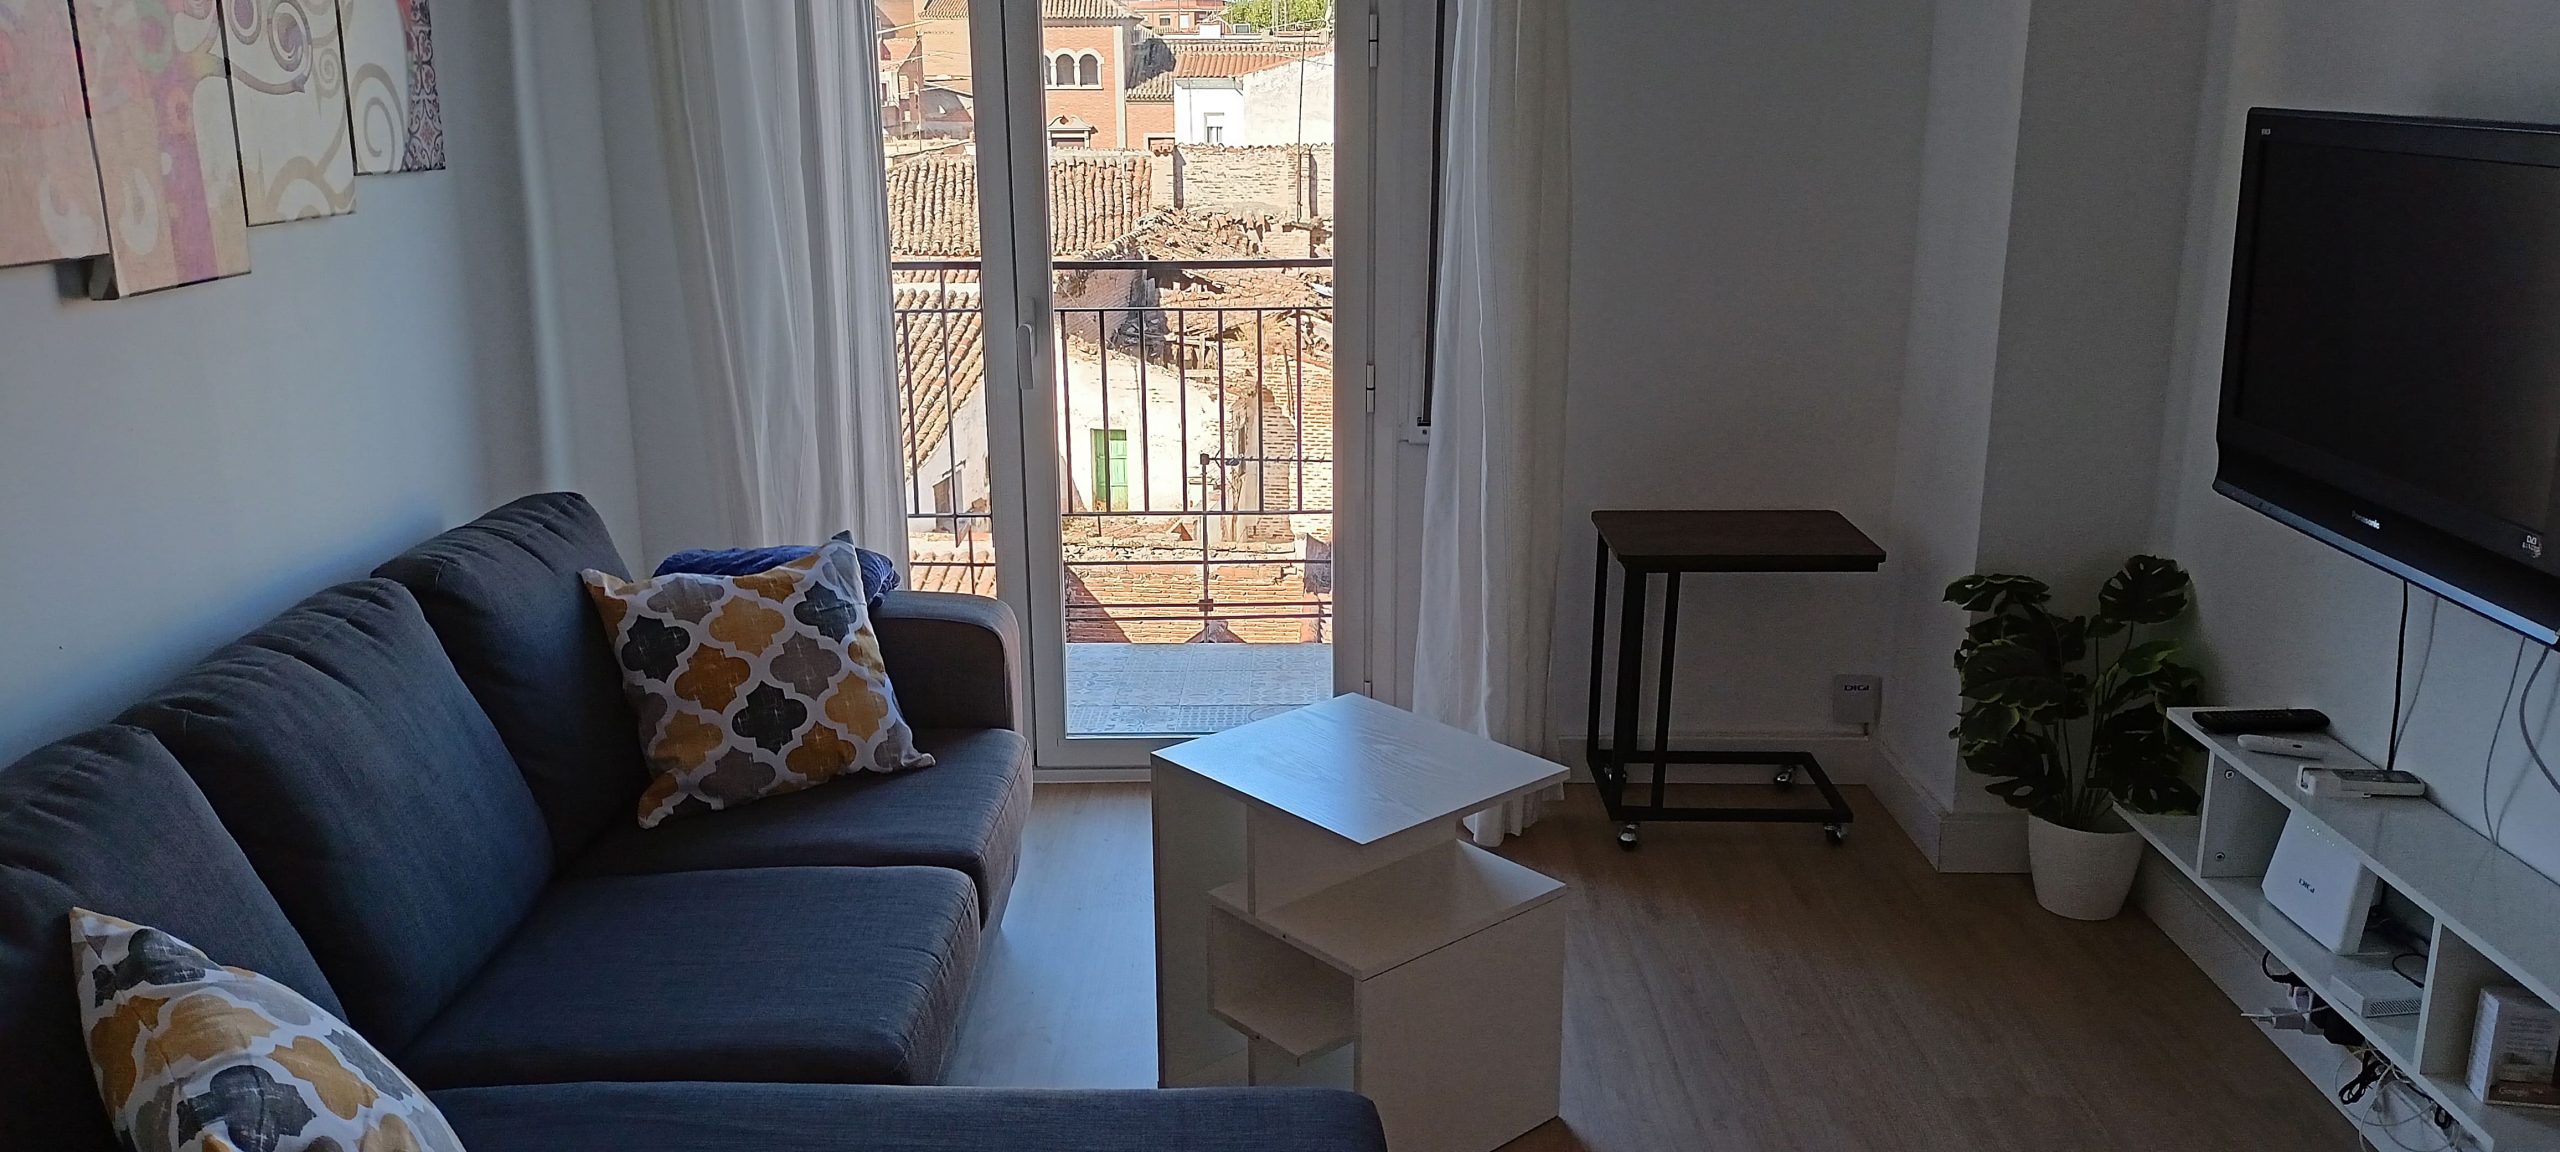 Rio Tajo - Furnished apartment for rent in Talavera de la Reina